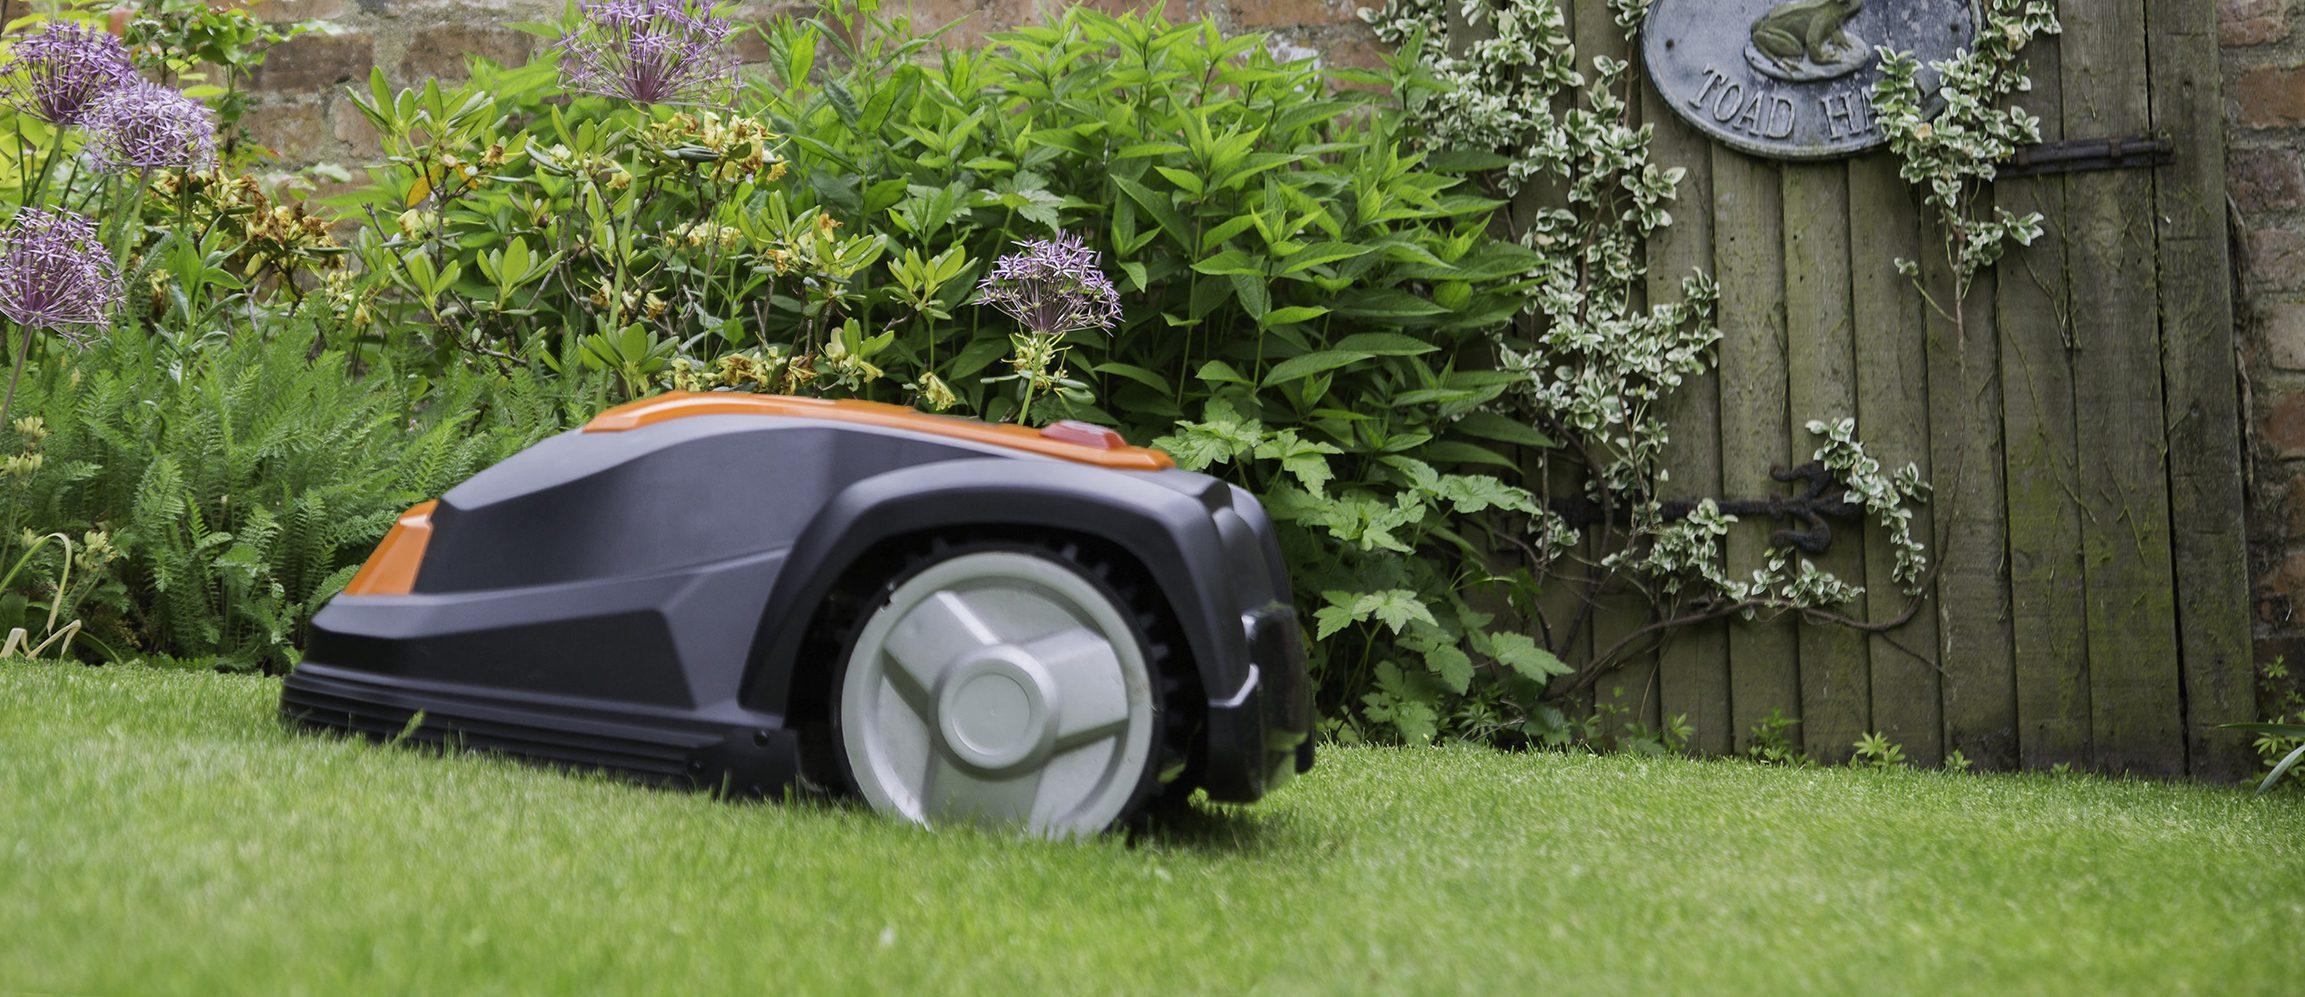 Robotgräsklippare av modell YardForce som klipper gräset i trädgård